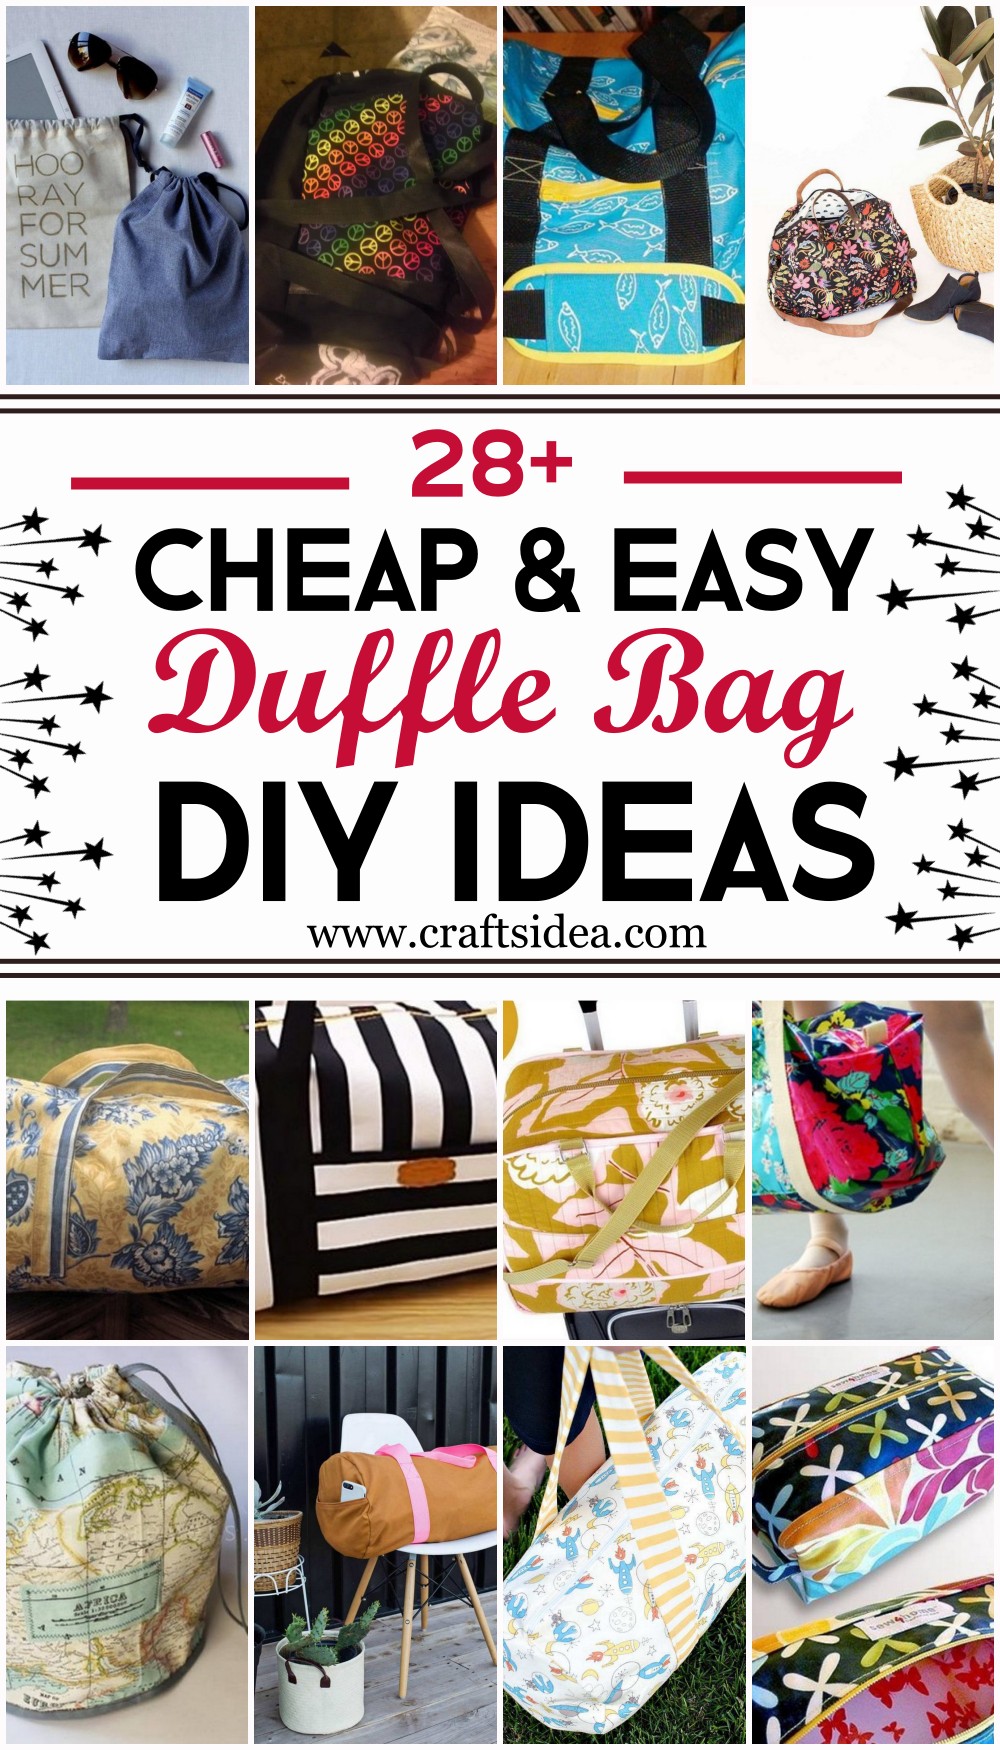 DIY Duffle Bag Ideas 1